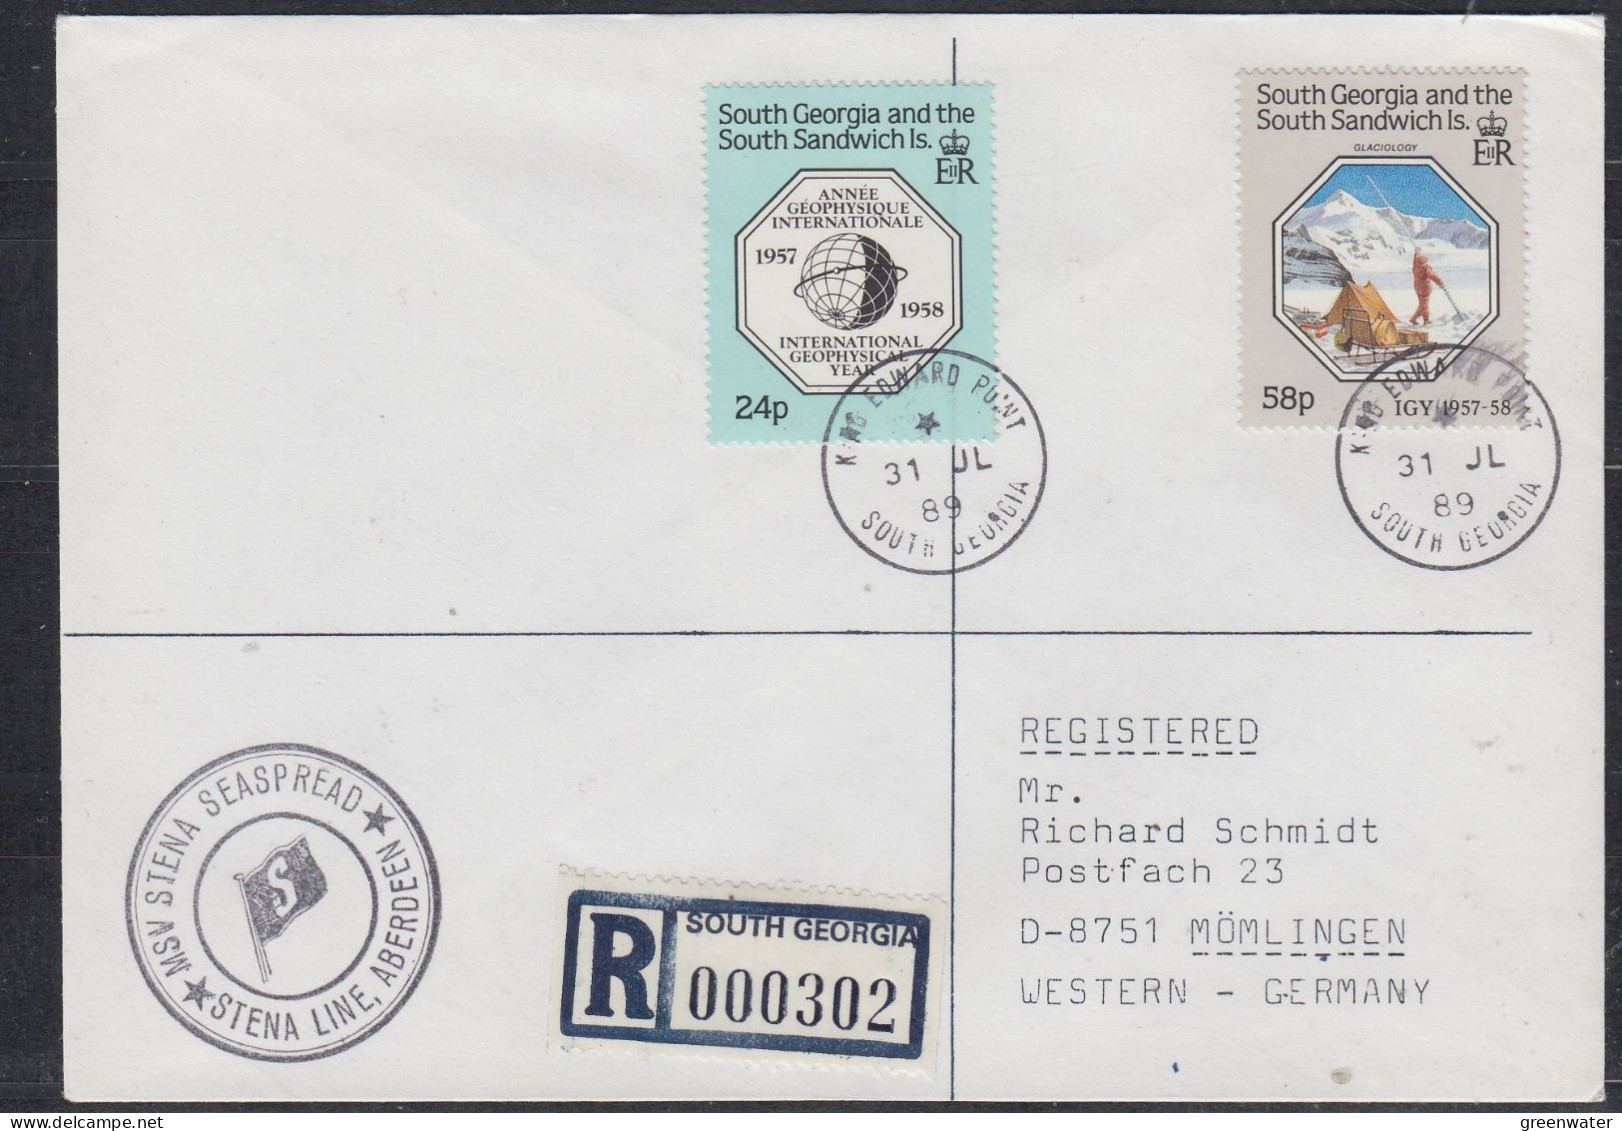 South Georgia & South Sandwich Islands 1989 MSV Stena Seaspread Registered Cover  Ca 31 JL 1989 (FG179) - Zuid-Georgia